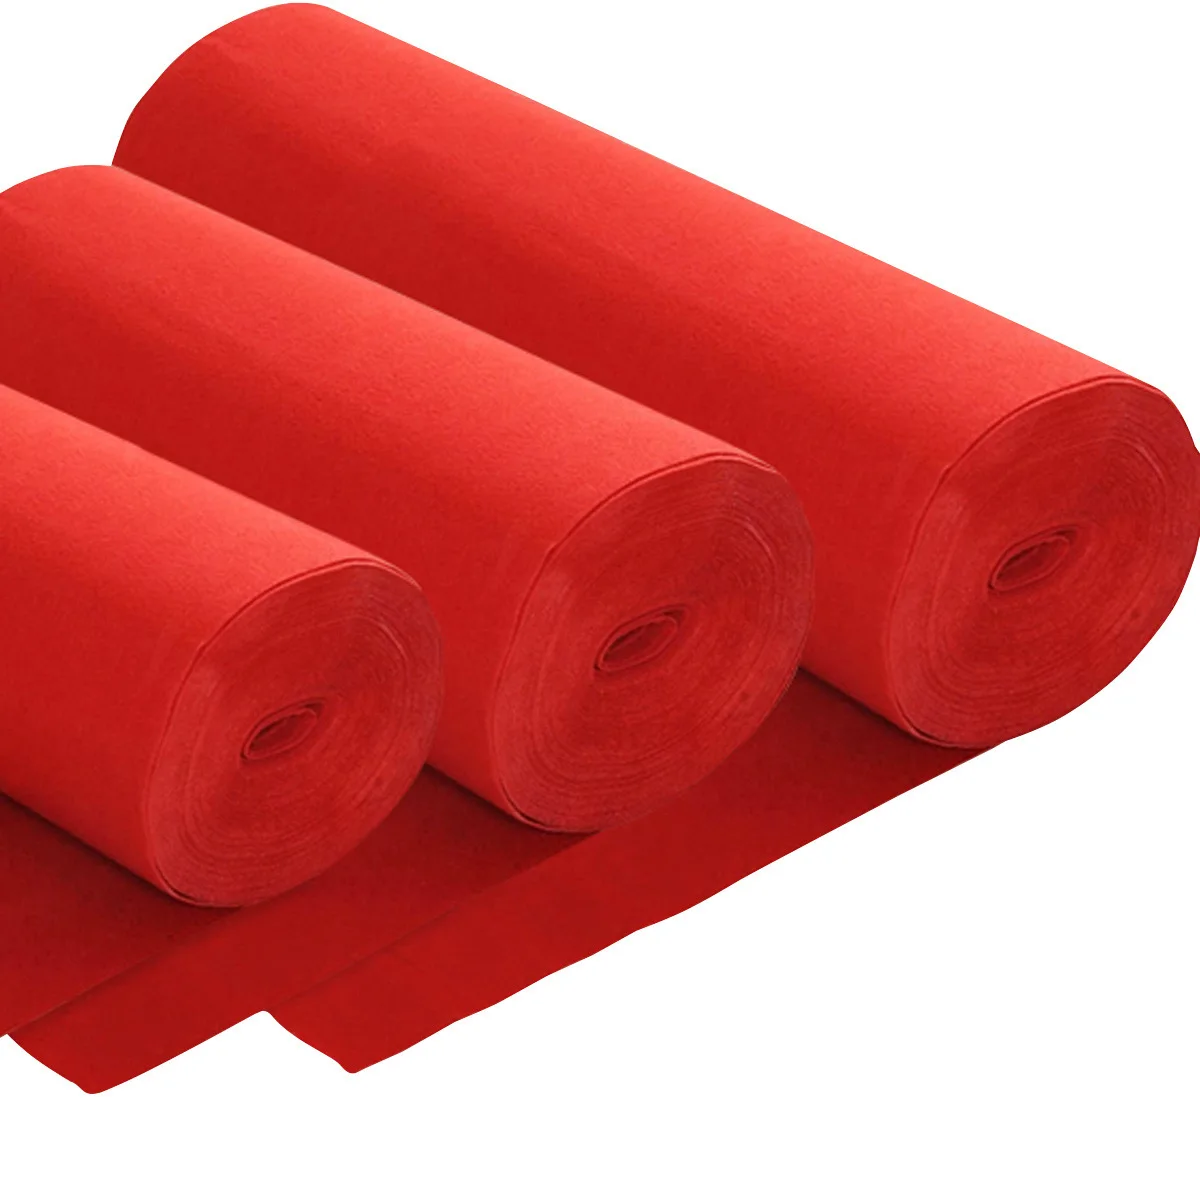 Alta calidad alfombra roja de tela para áreas de mucho tráfico: Alibaba.com